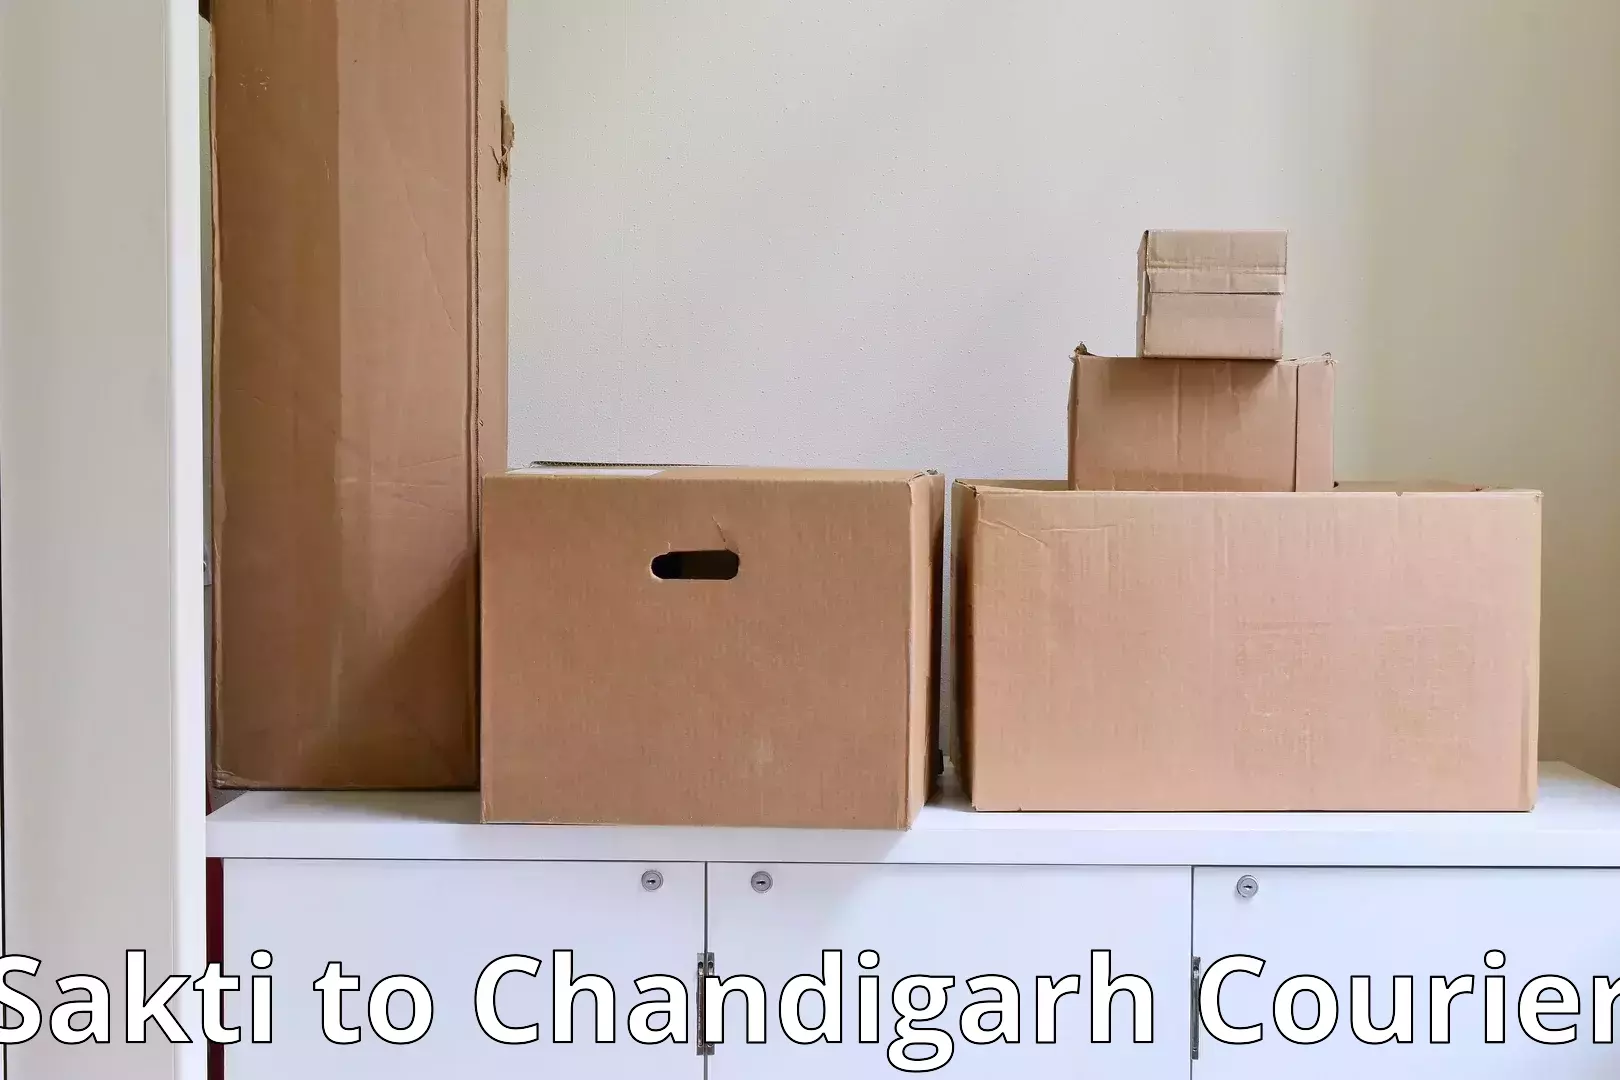 Furniture moving experts Sakti to Chandigarh